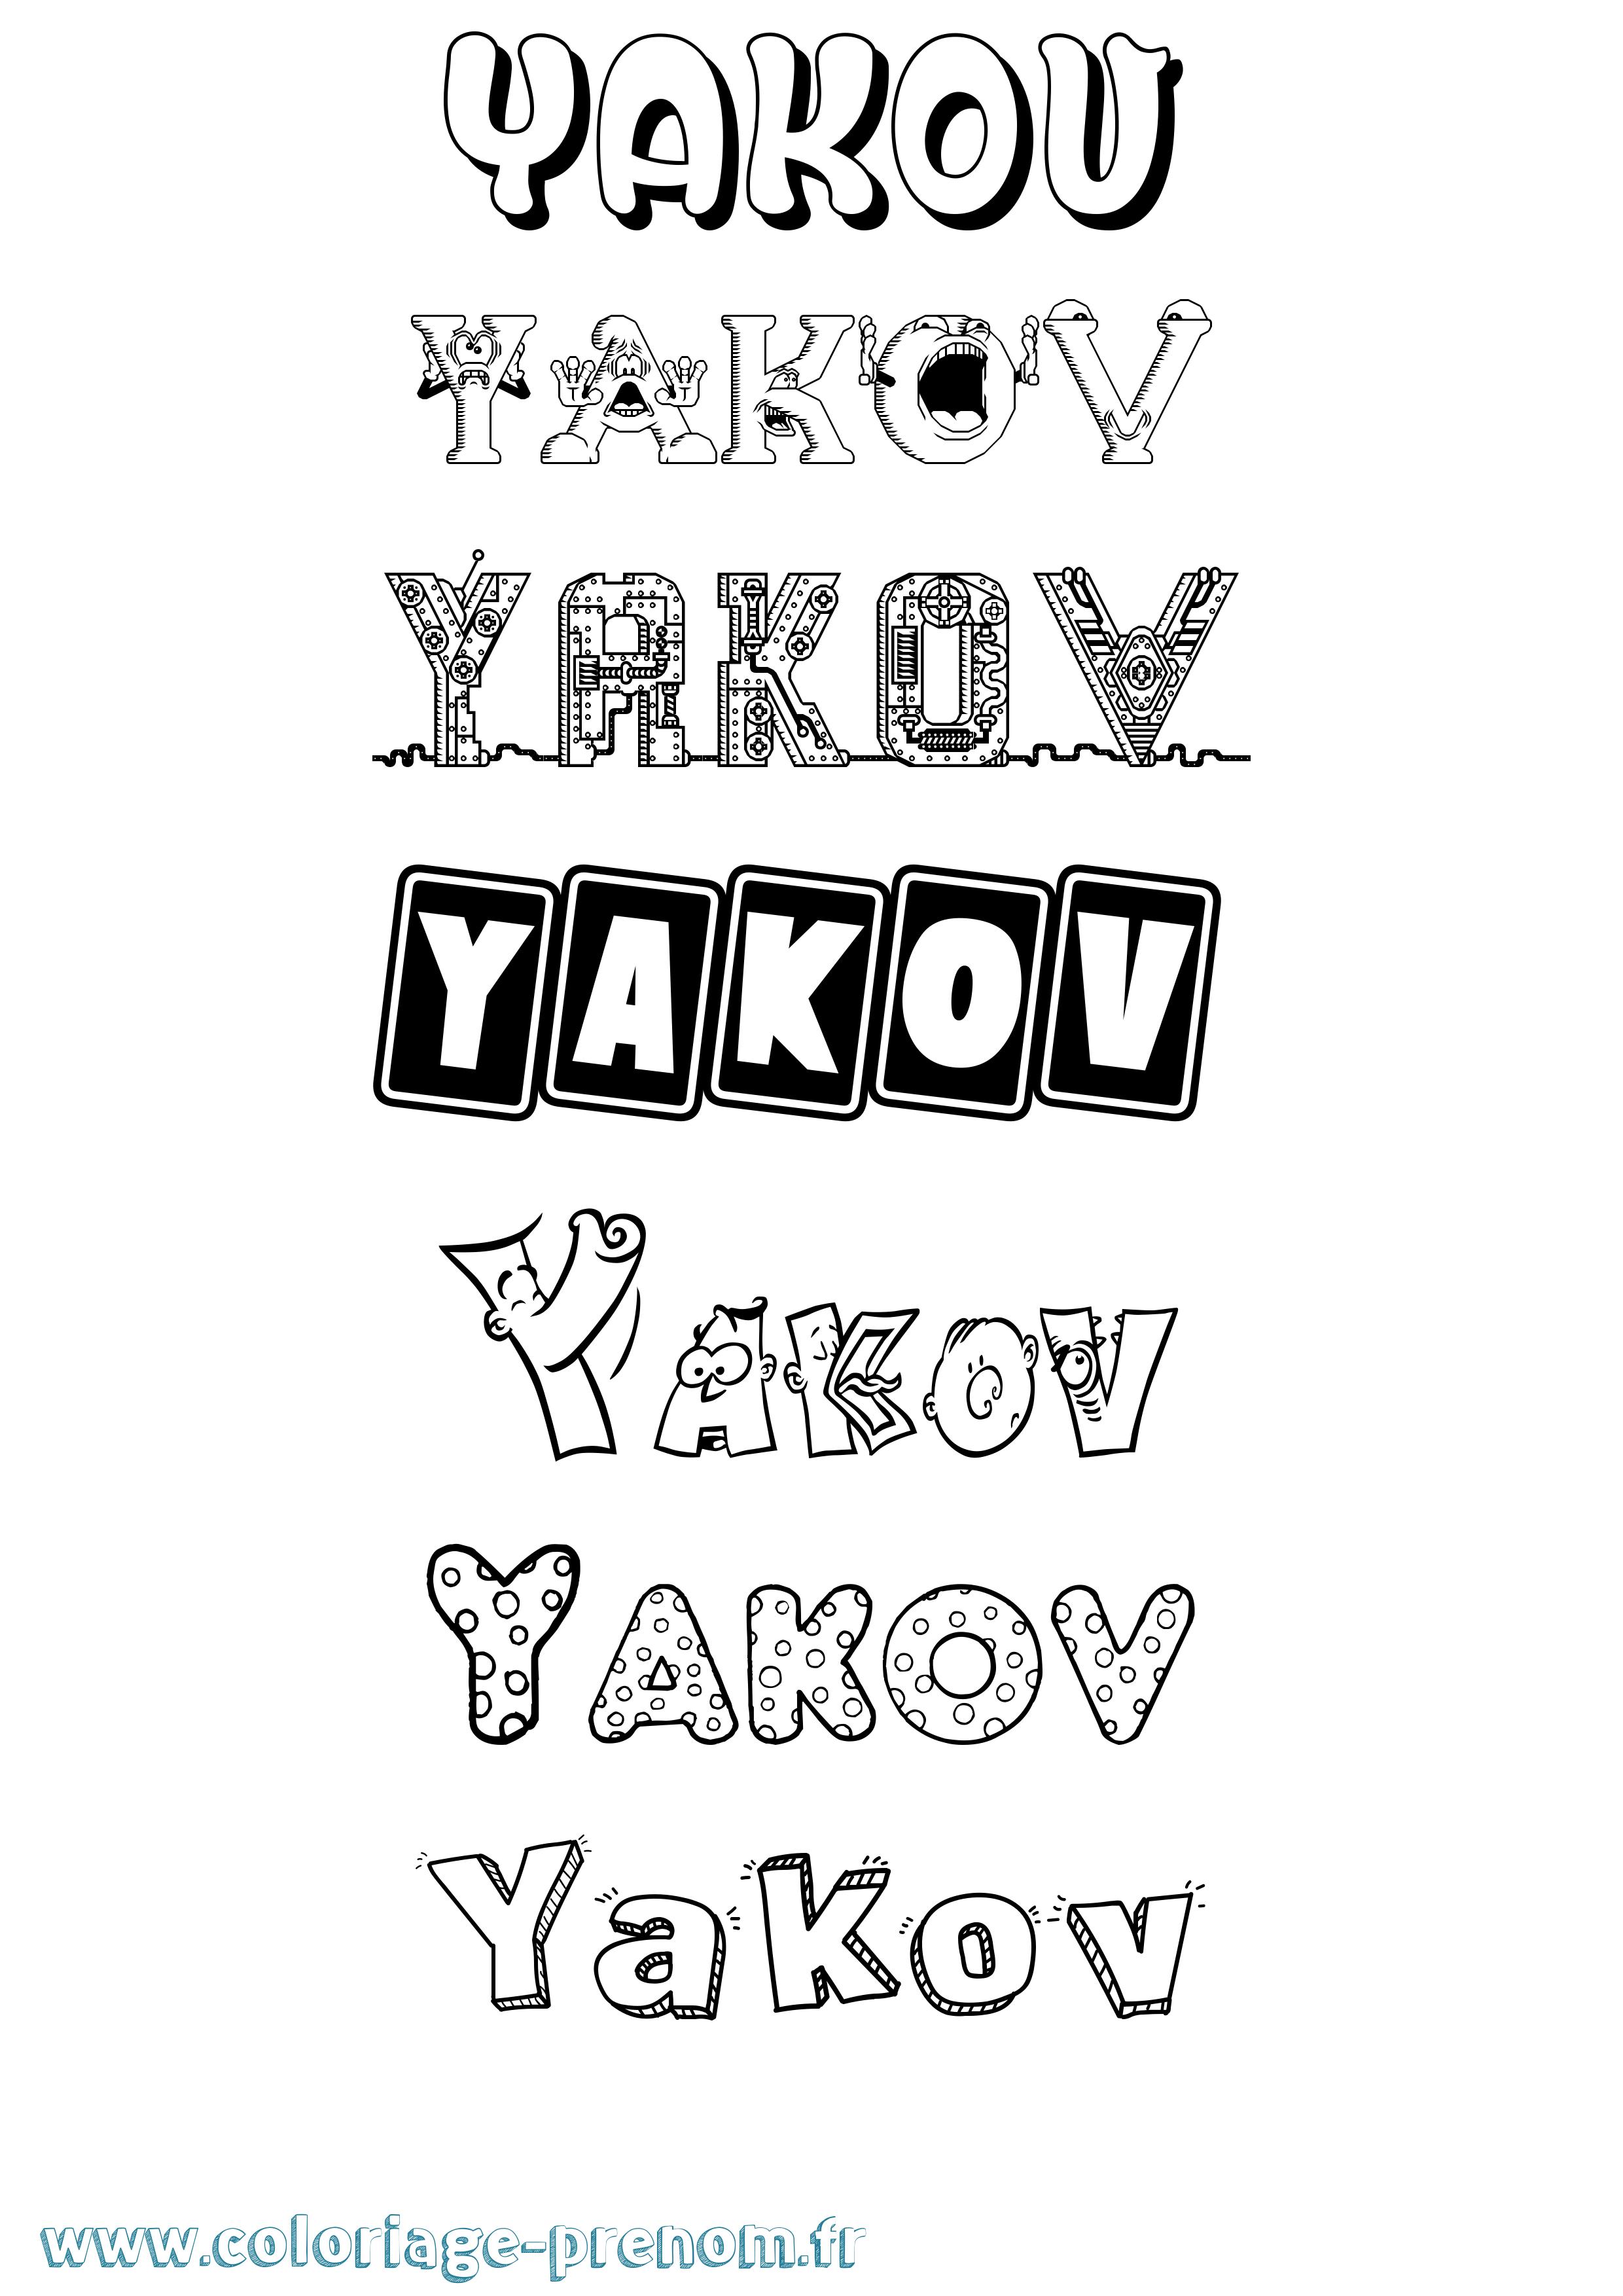 Coloriage prénom Yakov Fun